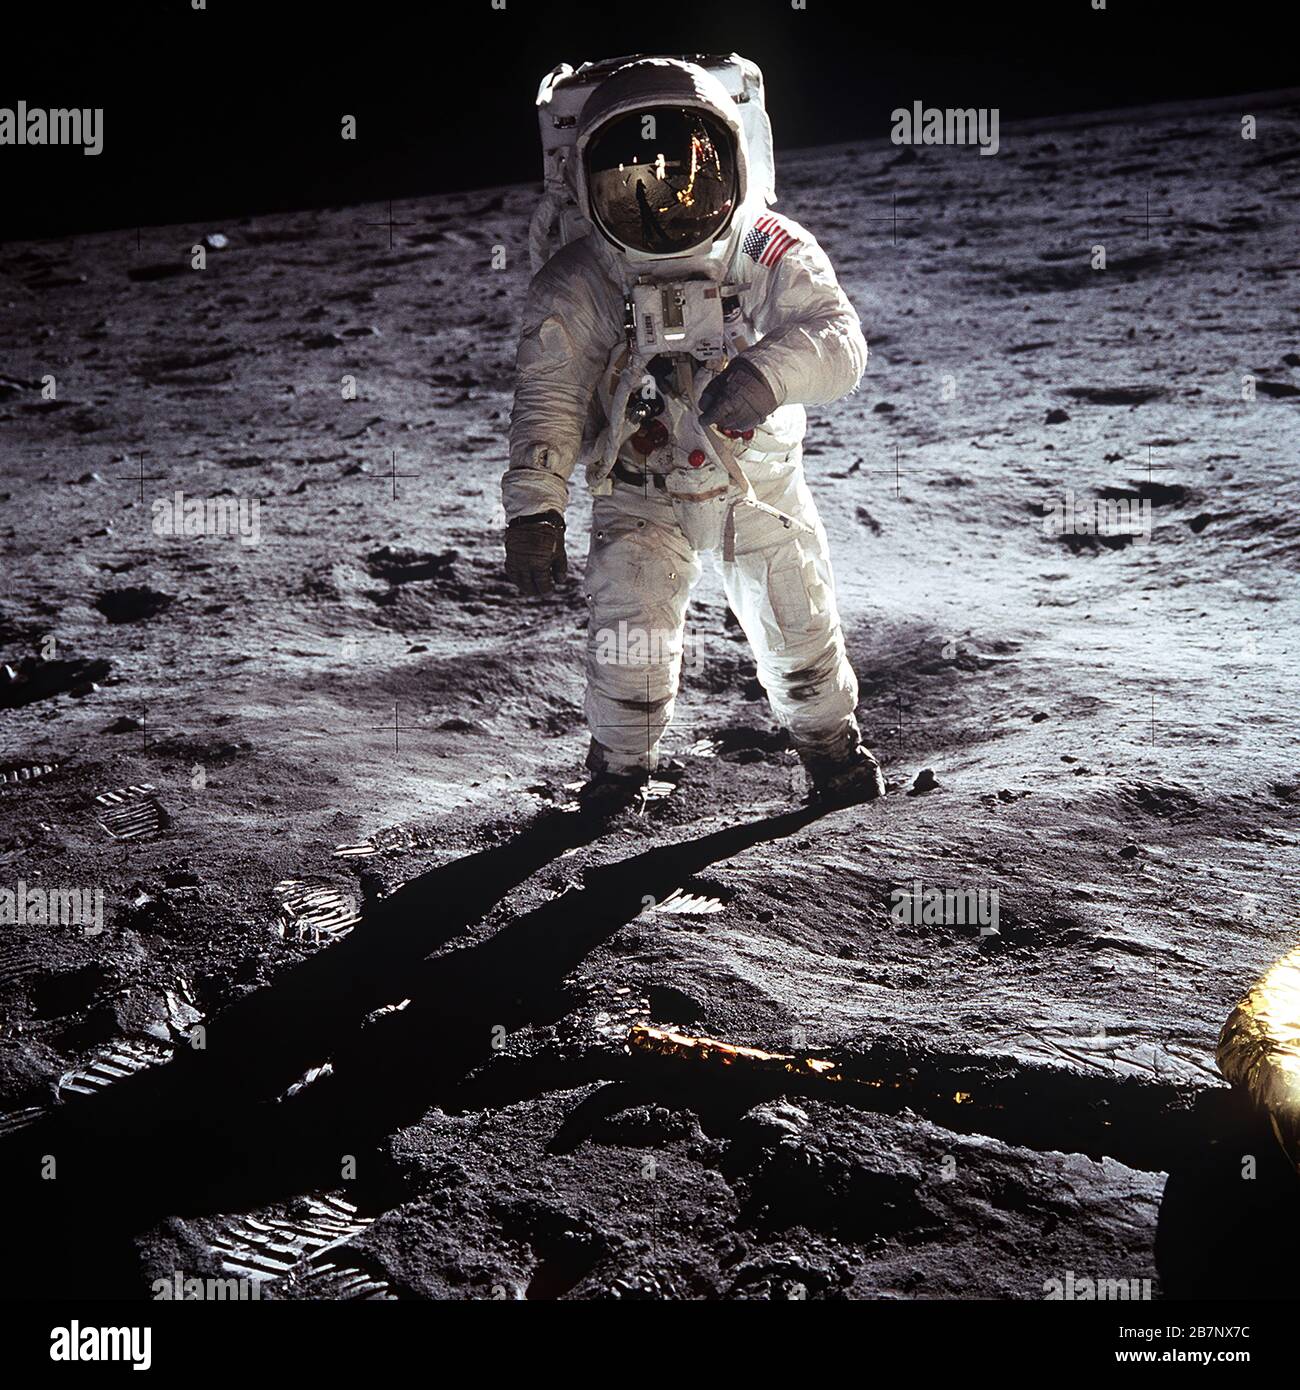 Apollo 11 - NASA, 1969. L'astronauta Buzz Aldrin cammina sulla superficie della luna vicino alla gamba del modulo lunare Eagle durante la missione Apollo 11. Il comandante della missione Neil Armstrong ha scattato questa fotografia con una macchina fotografica lunare da 70 mm. Mentre gli astronauti Armstrong e Aldrin esplorarono la regione del Mare della tranquillità della luna, l'astronauta Michael Collins rimase con i moduli di comando e servizio in orbita lunare. Foto Stock